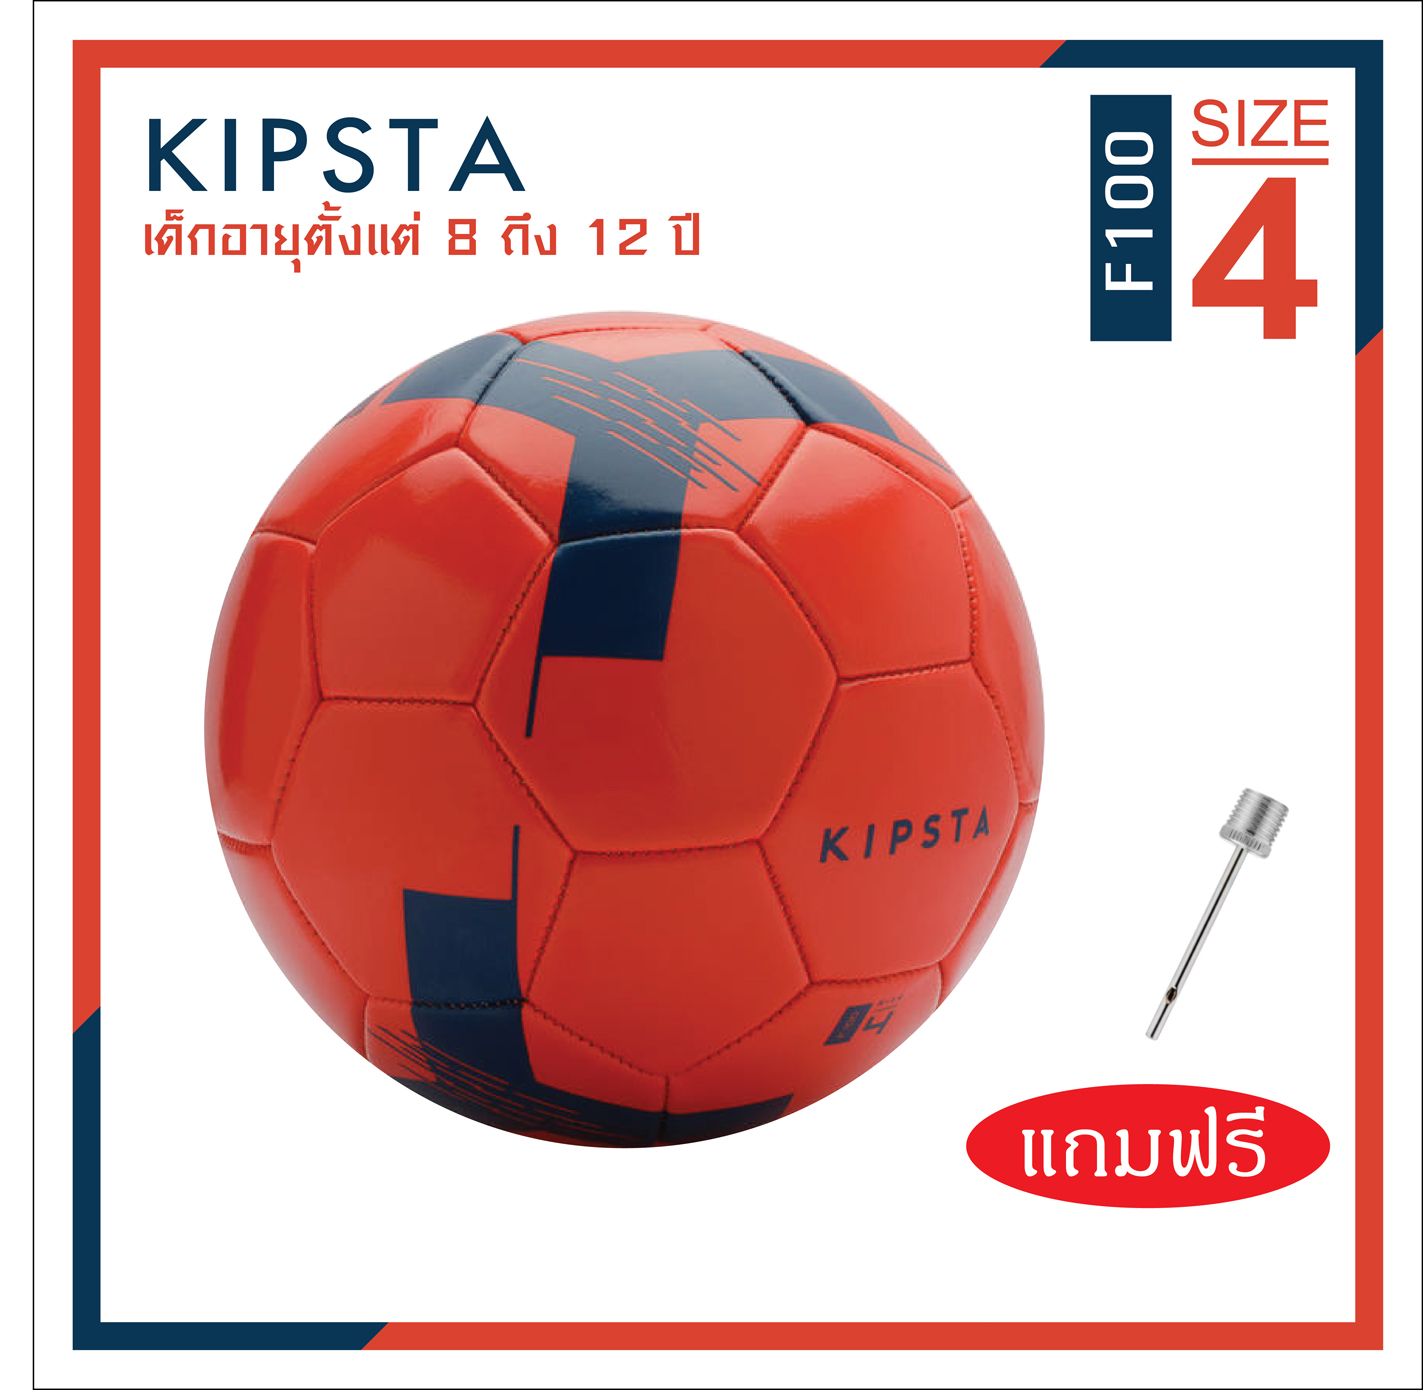 ลูกฟุตบอล ลูกบอล เบอร์ 5, 4, 3  KIPSTA (แบนด์จากฝรั่งเศส) รุ่น F100 หนังเย็บ PVC นุ่มสบายเท้า Football Soccer Ball Size 5 ราคาพิเศษ พร้อมส่งทั่วไทย จำนวนจำกัด!!